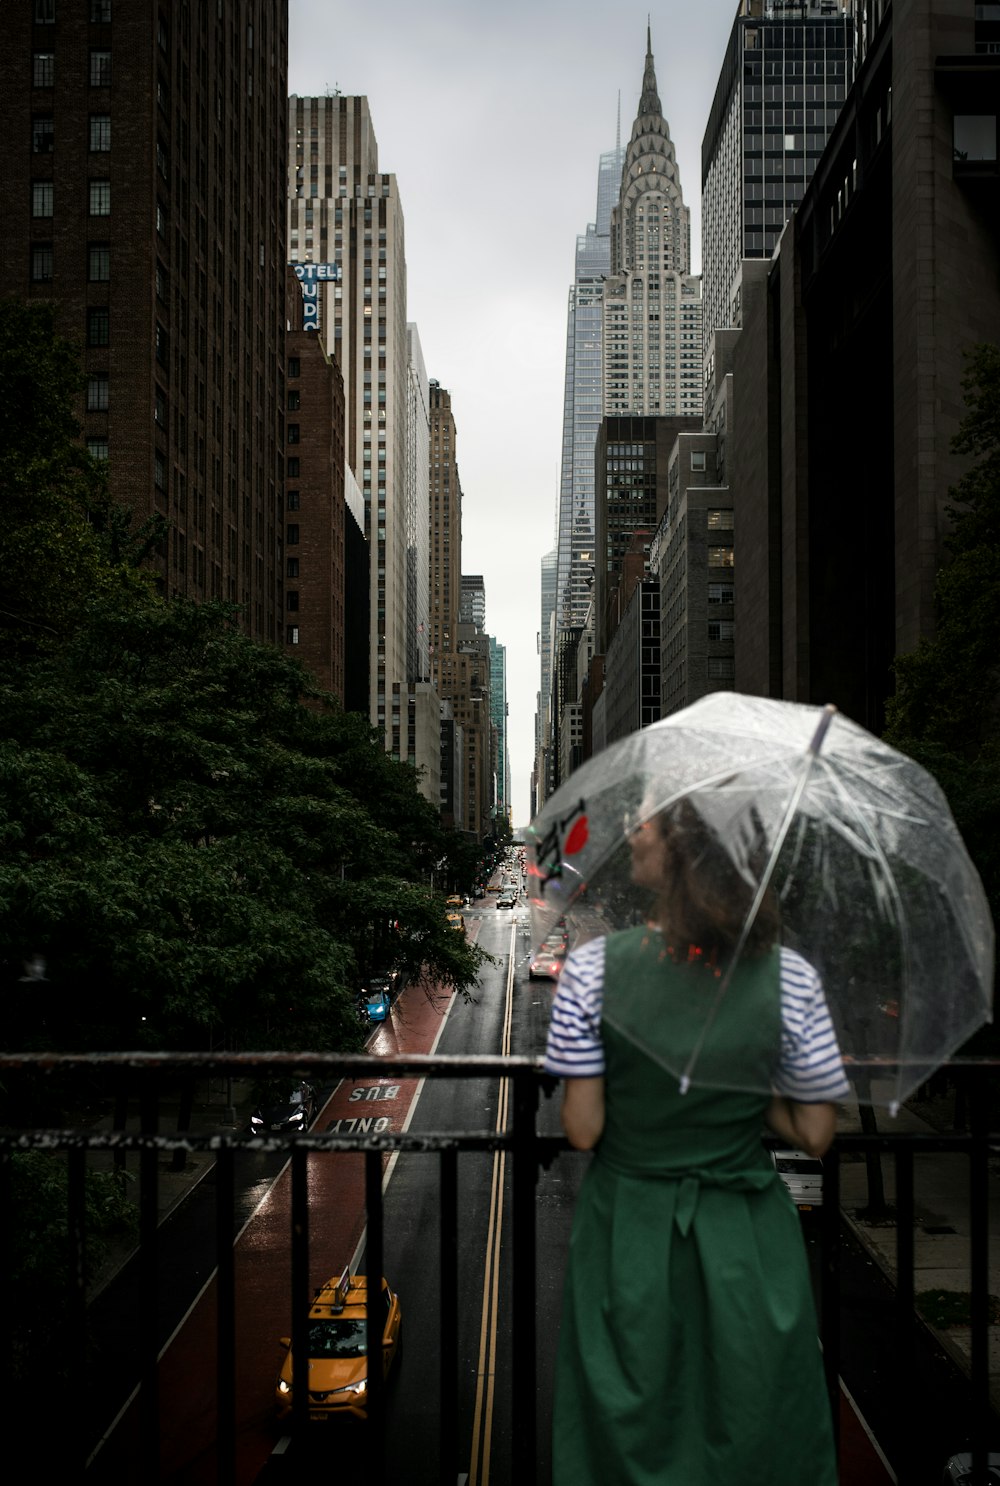 a woman in a green dress holding an umbrella